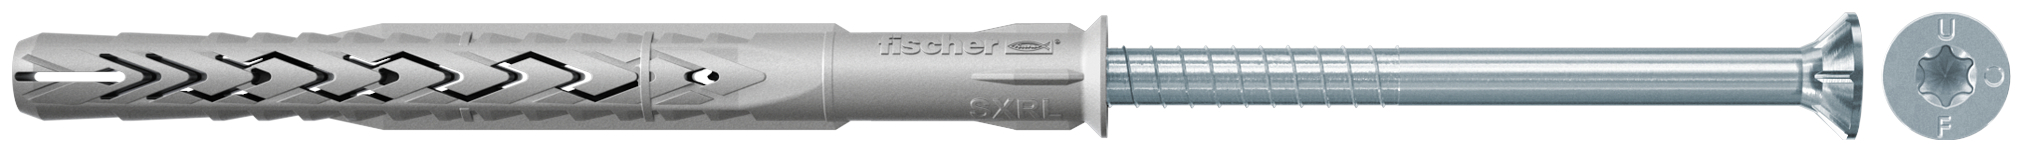 fischer Tasselli prolungati SXRL 14X330 T (1 Pz.) Tassello prolungato in nylon con marcatura CE con vite premontata T.S.P. impronta torx fie2568